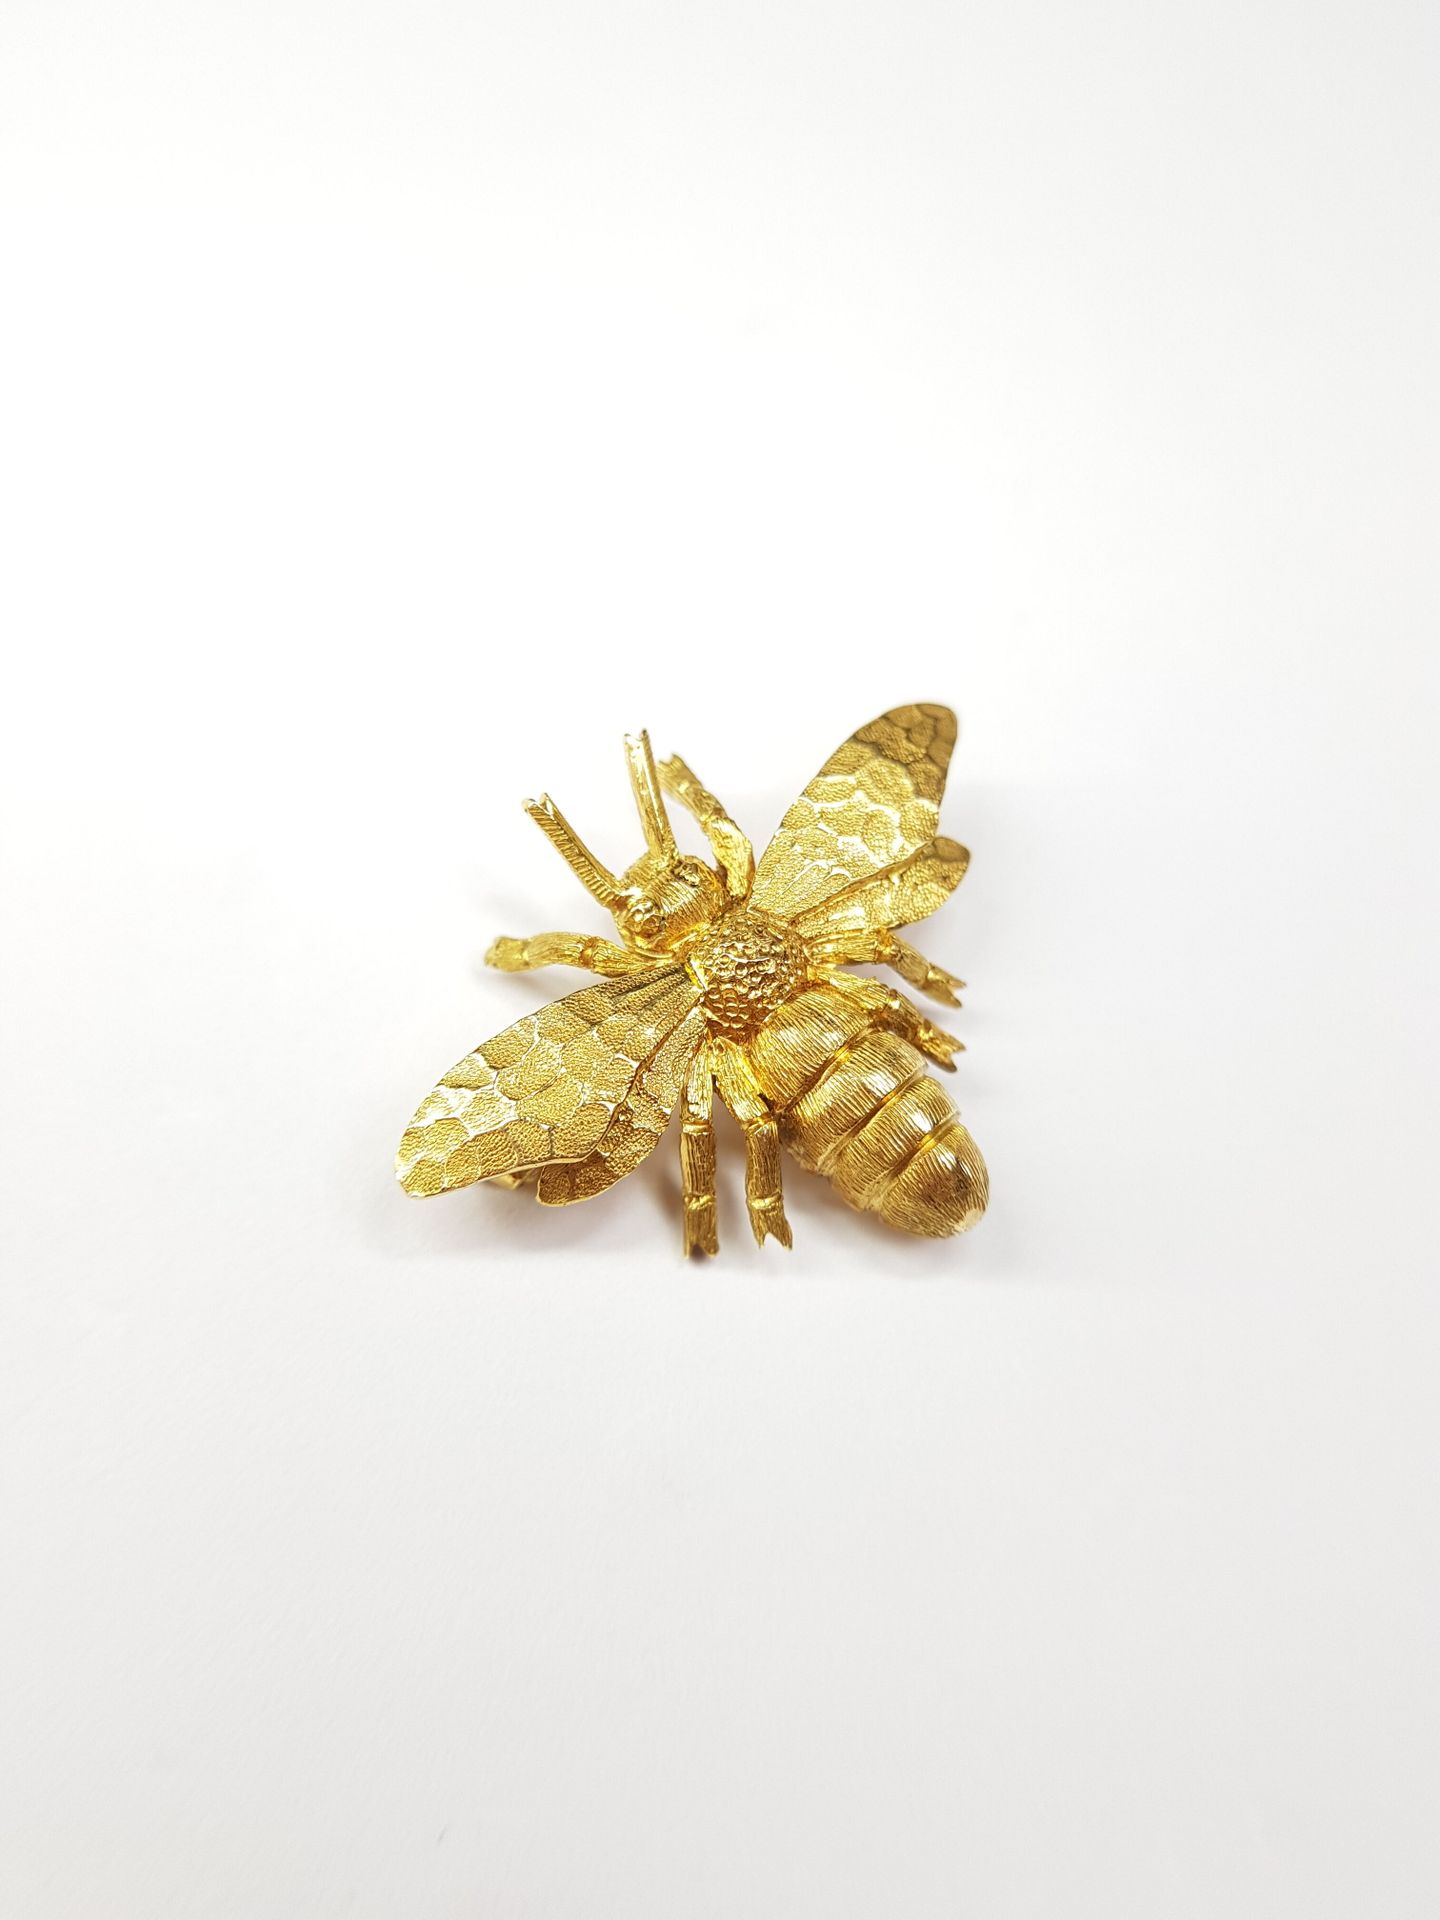 Null Spilla in oro 750 ‰ con ape.

Peso: 6,53 g

Lunghezza : 2 cm